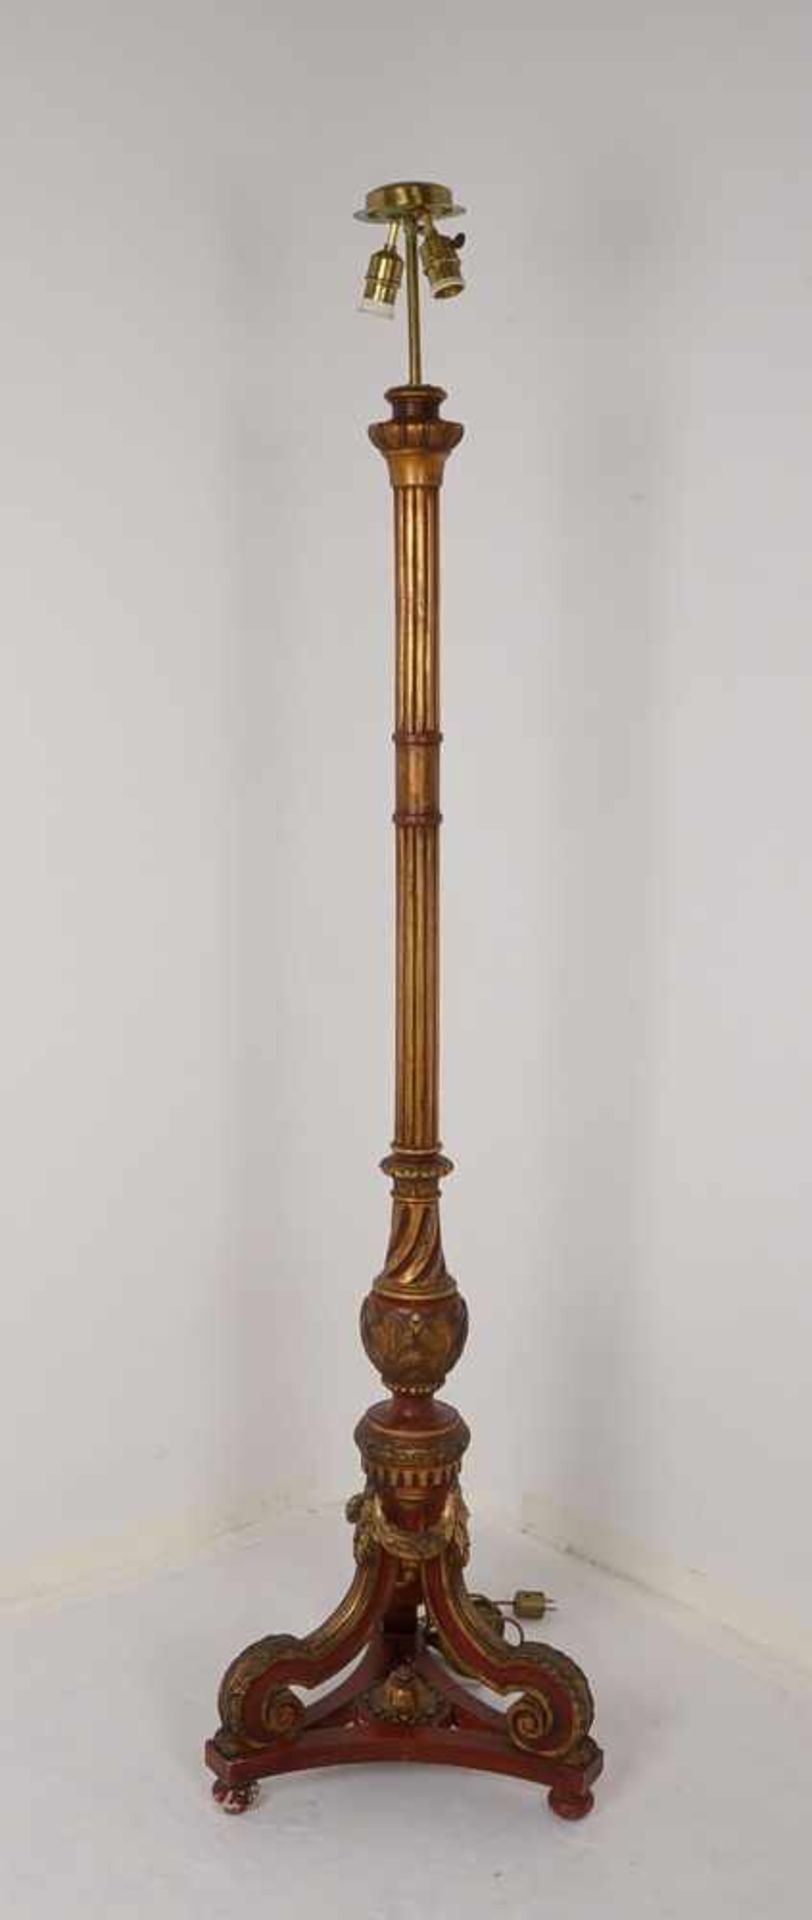 Stehleuchte, Empire-Stil, 2-flammig, Holz gefasst - ohne Schirm; Höhe 180 cm